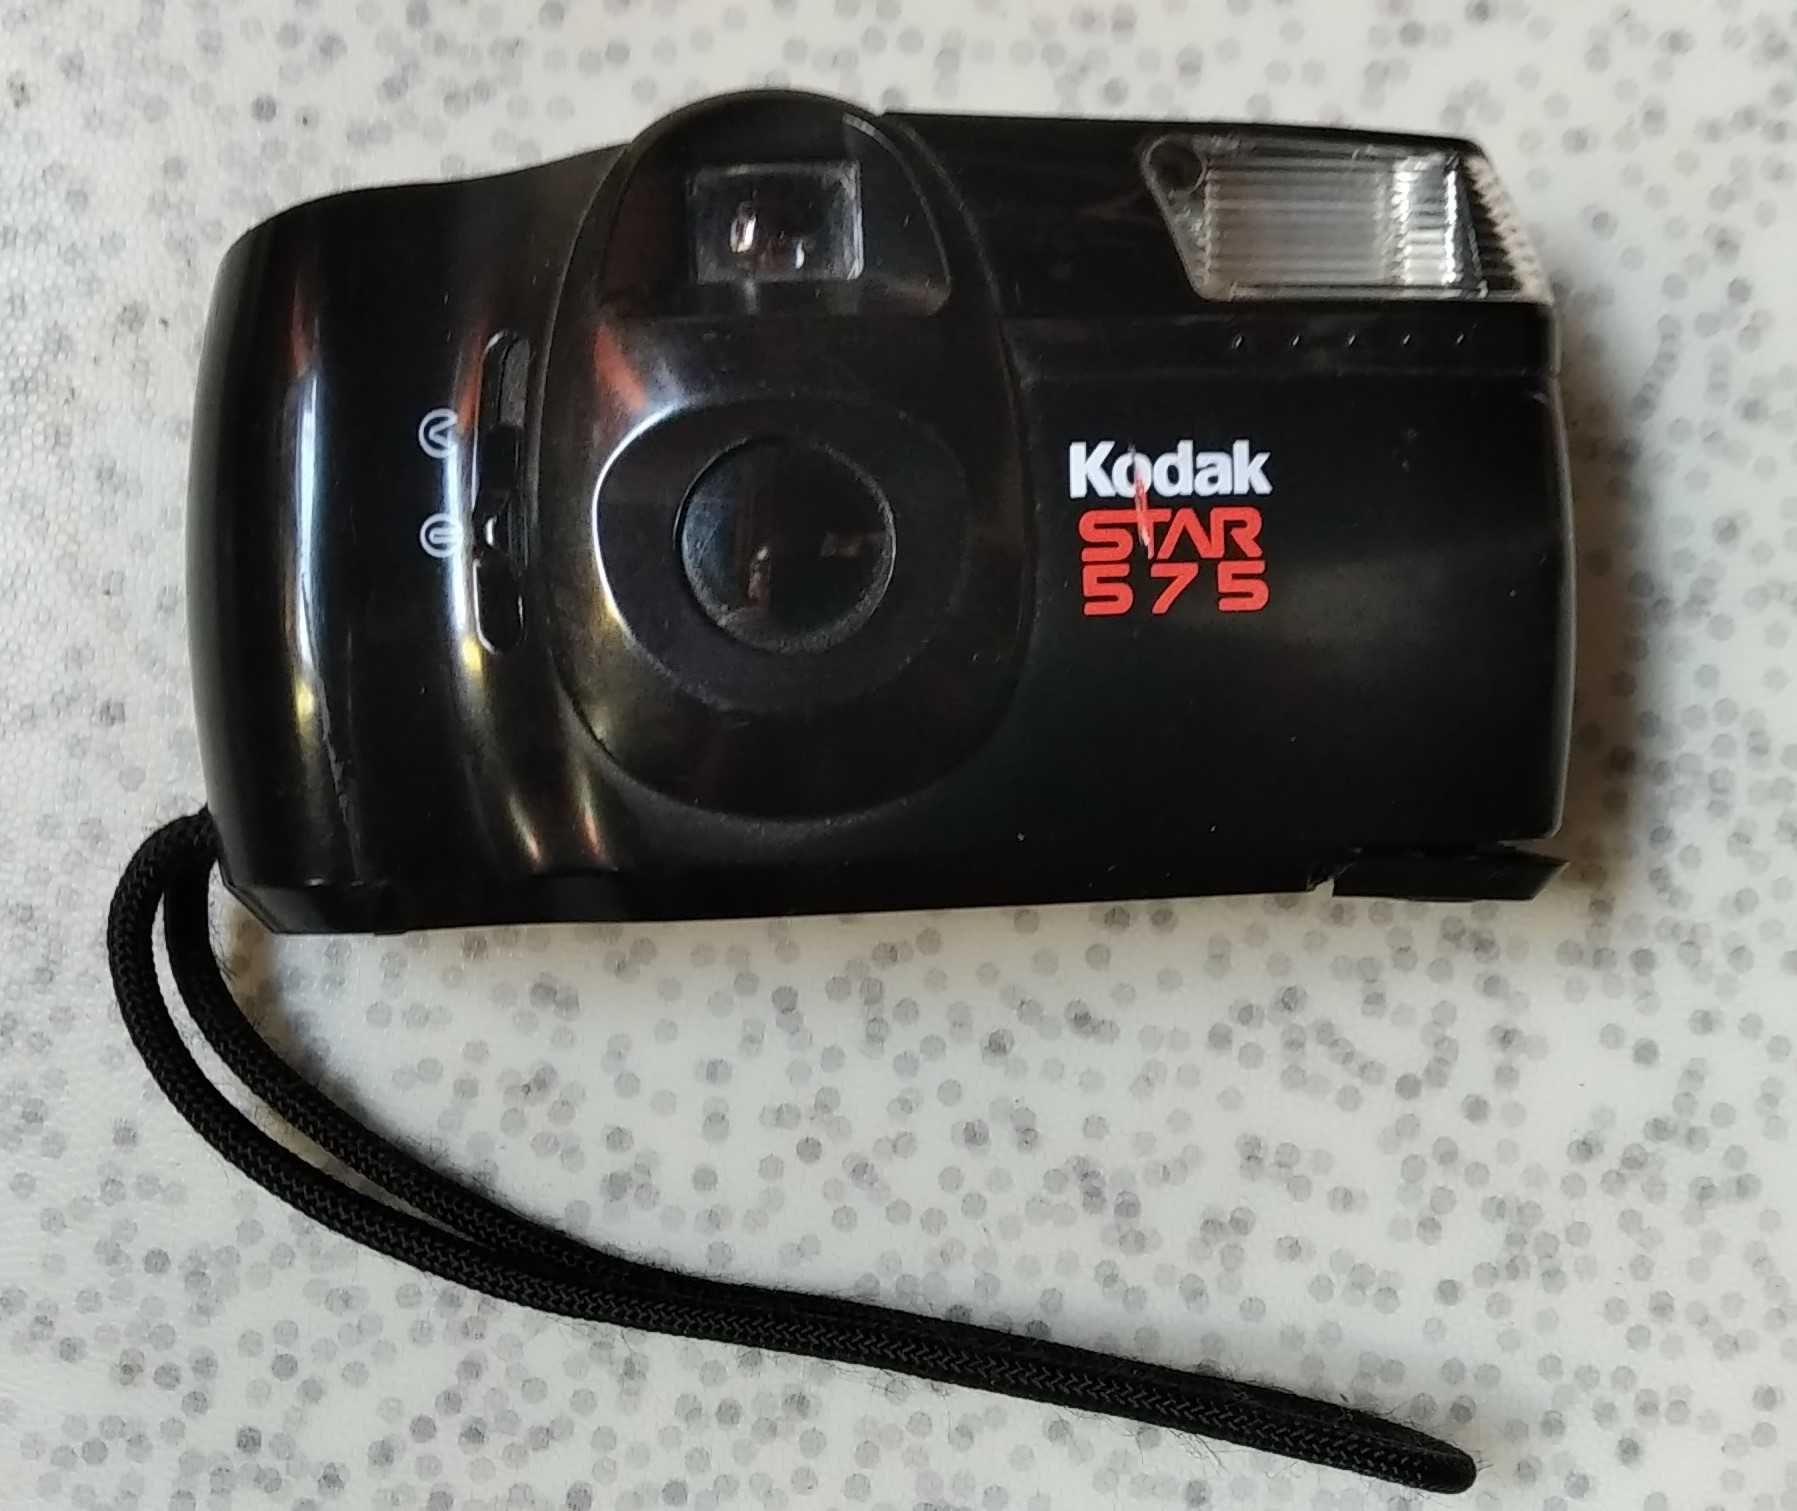 Maquina Fotográfica Kodak Star 575, carregador Sony BC - CSGE